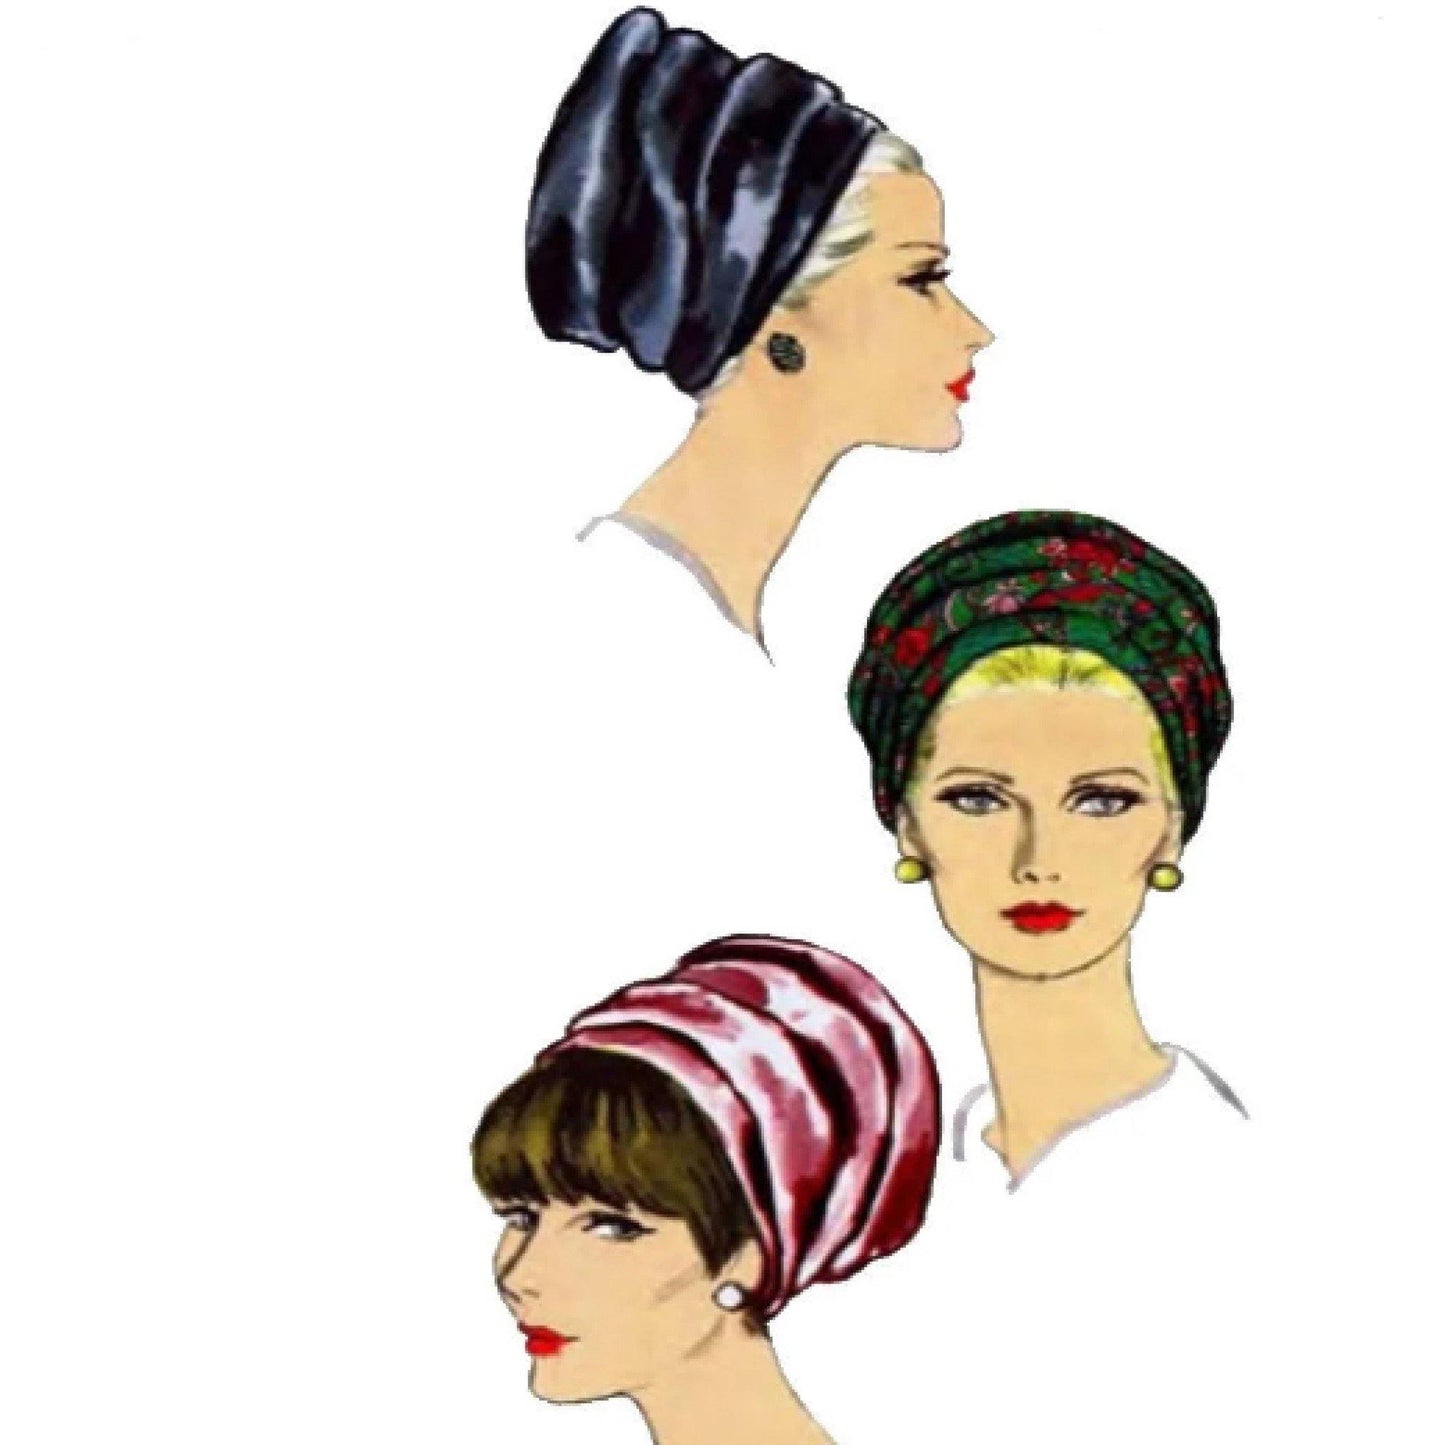 Women wearing hats